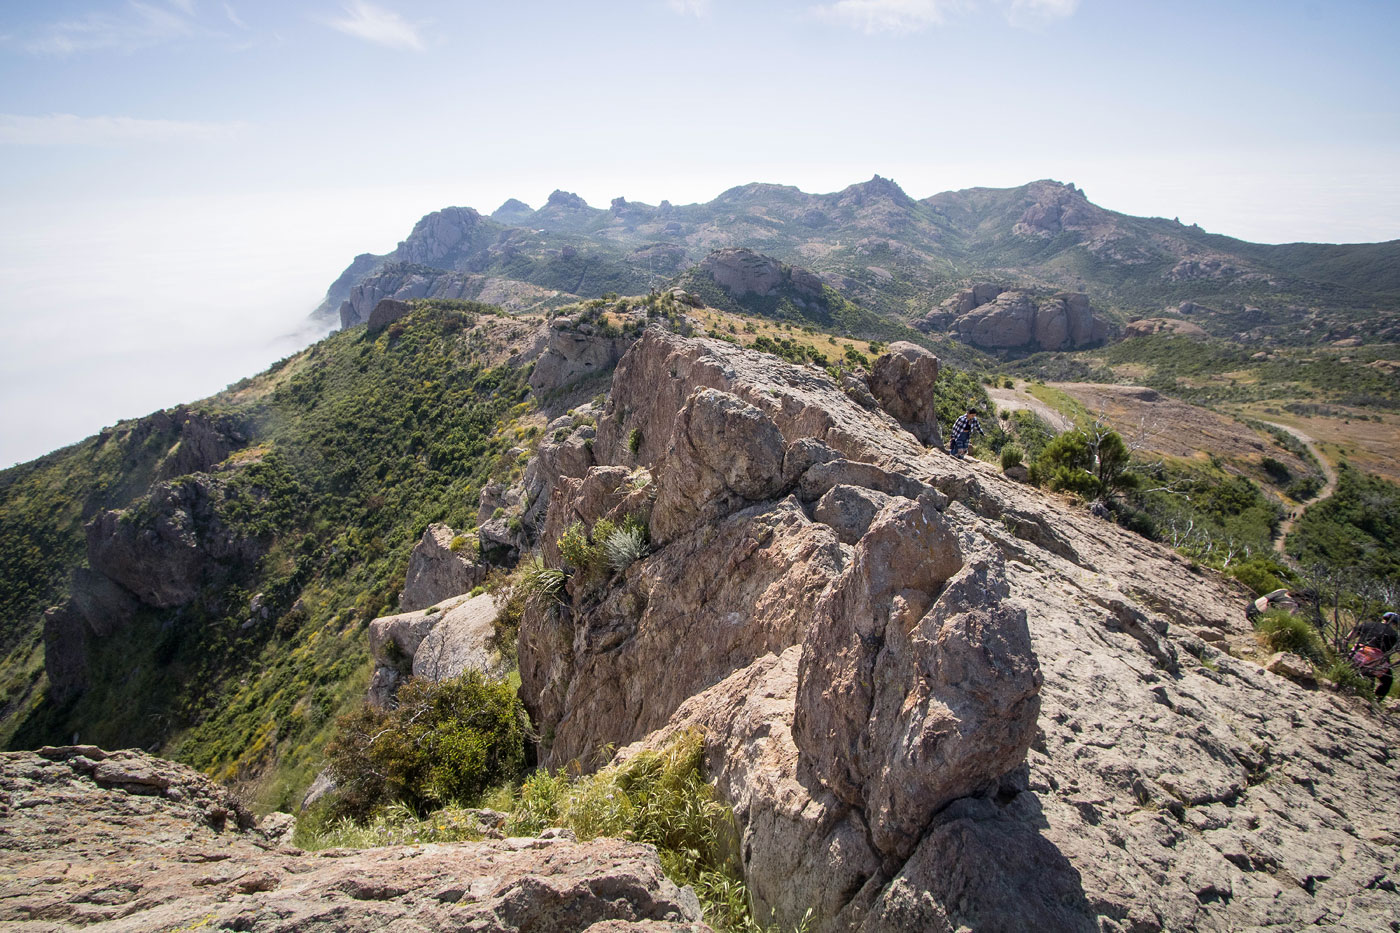 Hike Sandstone Peak and Tri-Peaks Loop in Santa Monica Mountain National Recreation Area, California - Stav is Lost